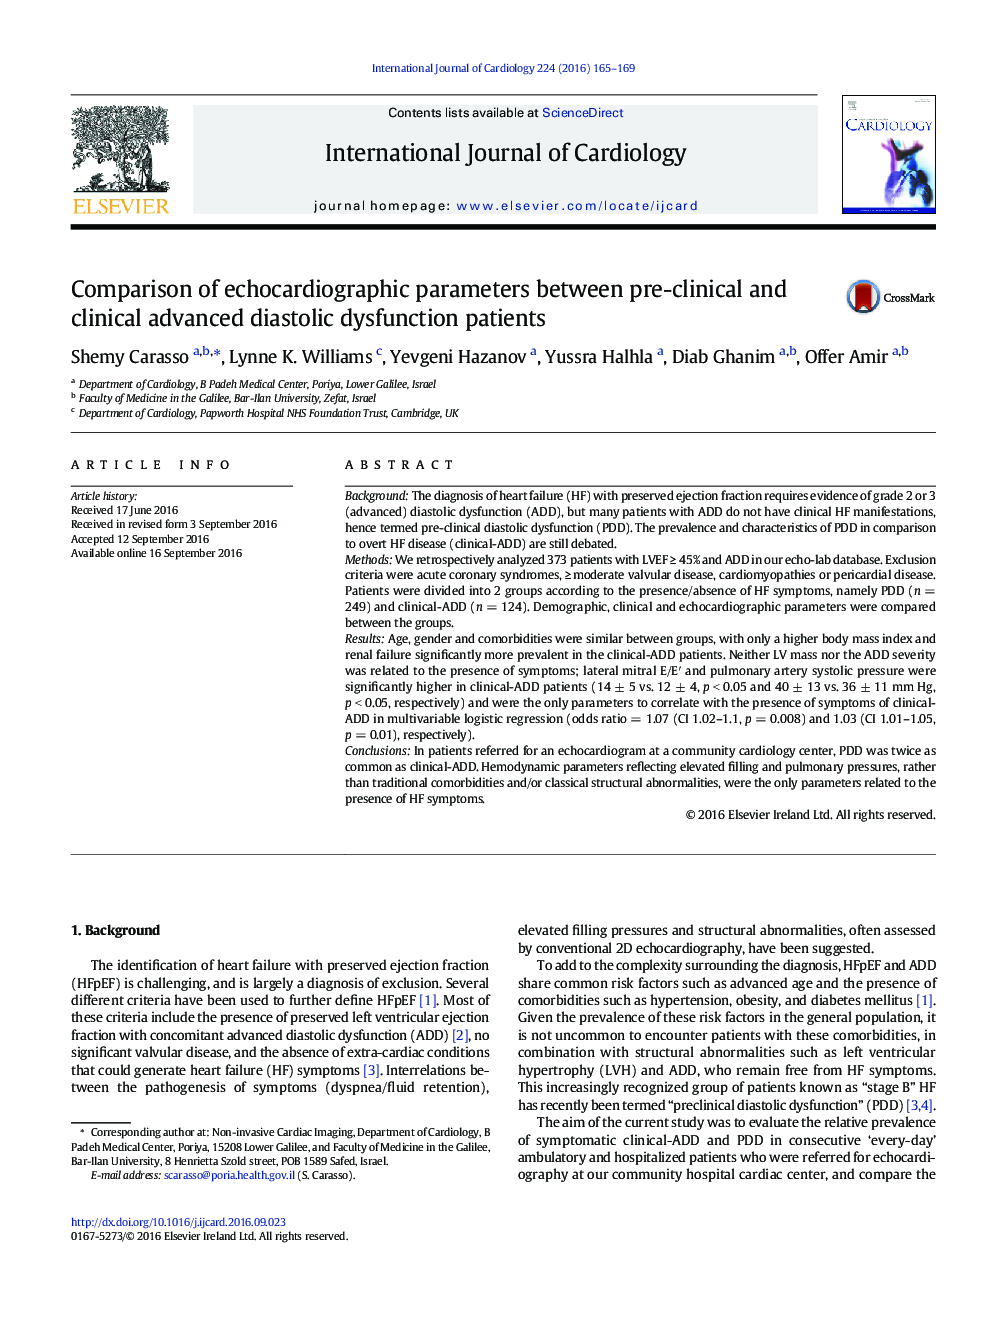 مقایسه پارامترهای اکوکاردیوگرافی بین بیماران دیاستولی اختلال عملکرد پیش از بالینی و بالینی 